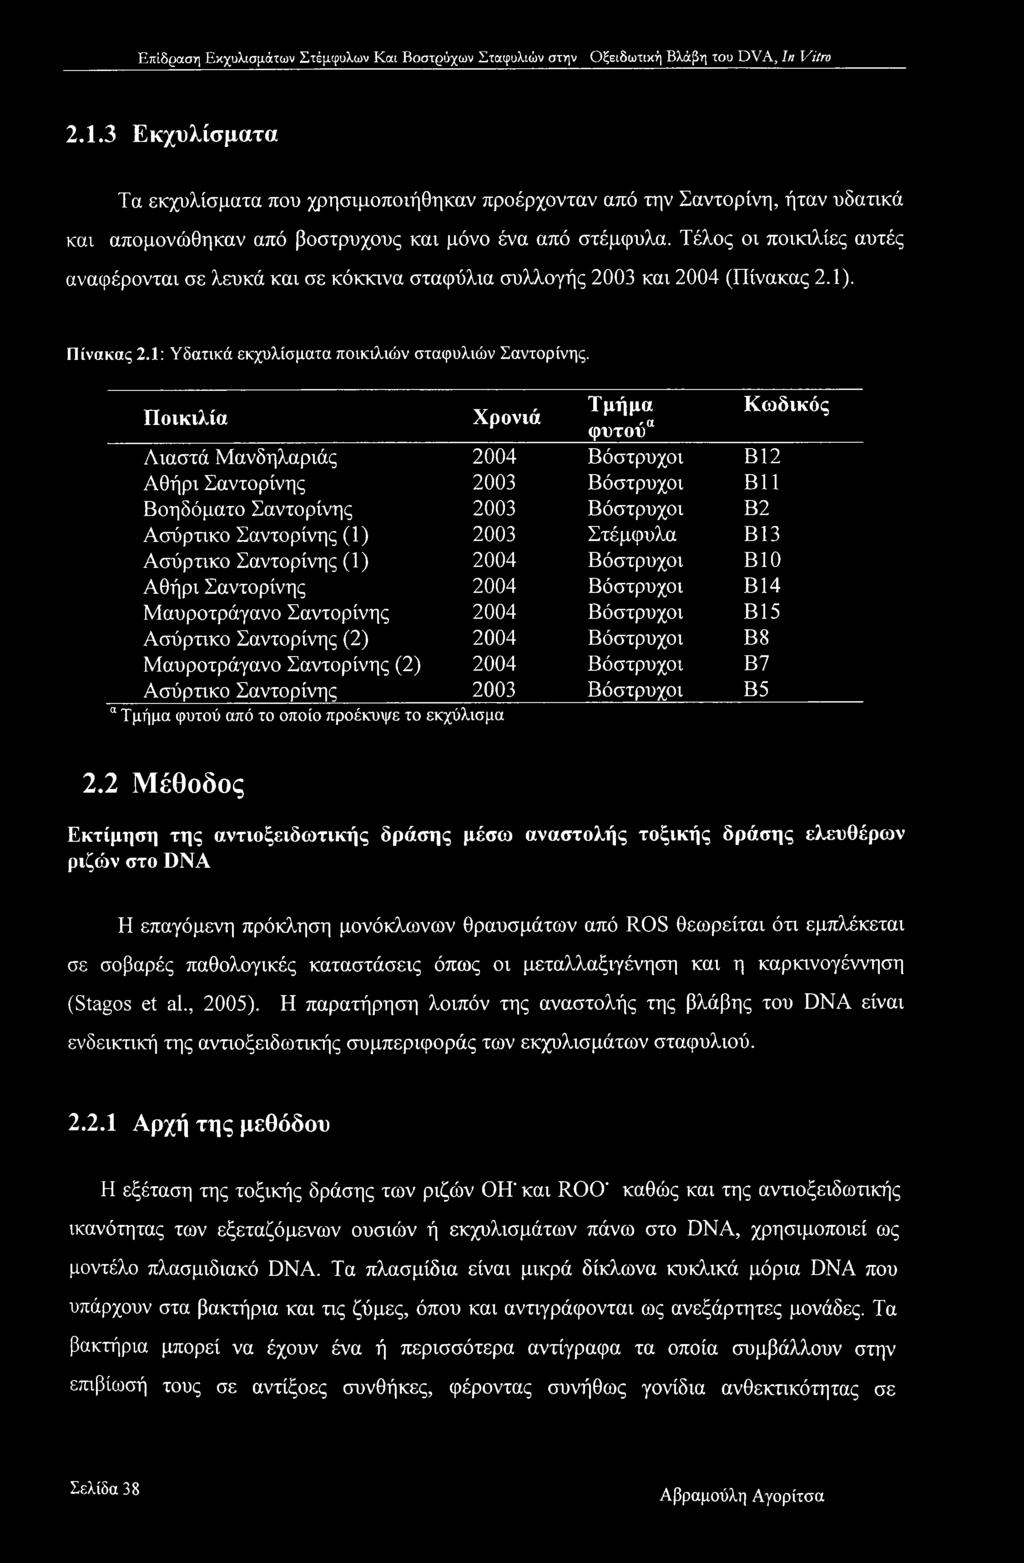 Ποικιλία Χρονιά Τμήμα Κωδικός φυτούα Λιαστά Μανδηλαριάς 2004 Βόστρυχοι Β12 Αθήρι Σαντορίνης 2003 Βόστρυχοι Β11 Βοηδόματο Σαντορίνης 2003 Βόστρυχοι Β2 Ασύρτικο Σαντορίνης (1) 2003 Στέμφυλα Β13